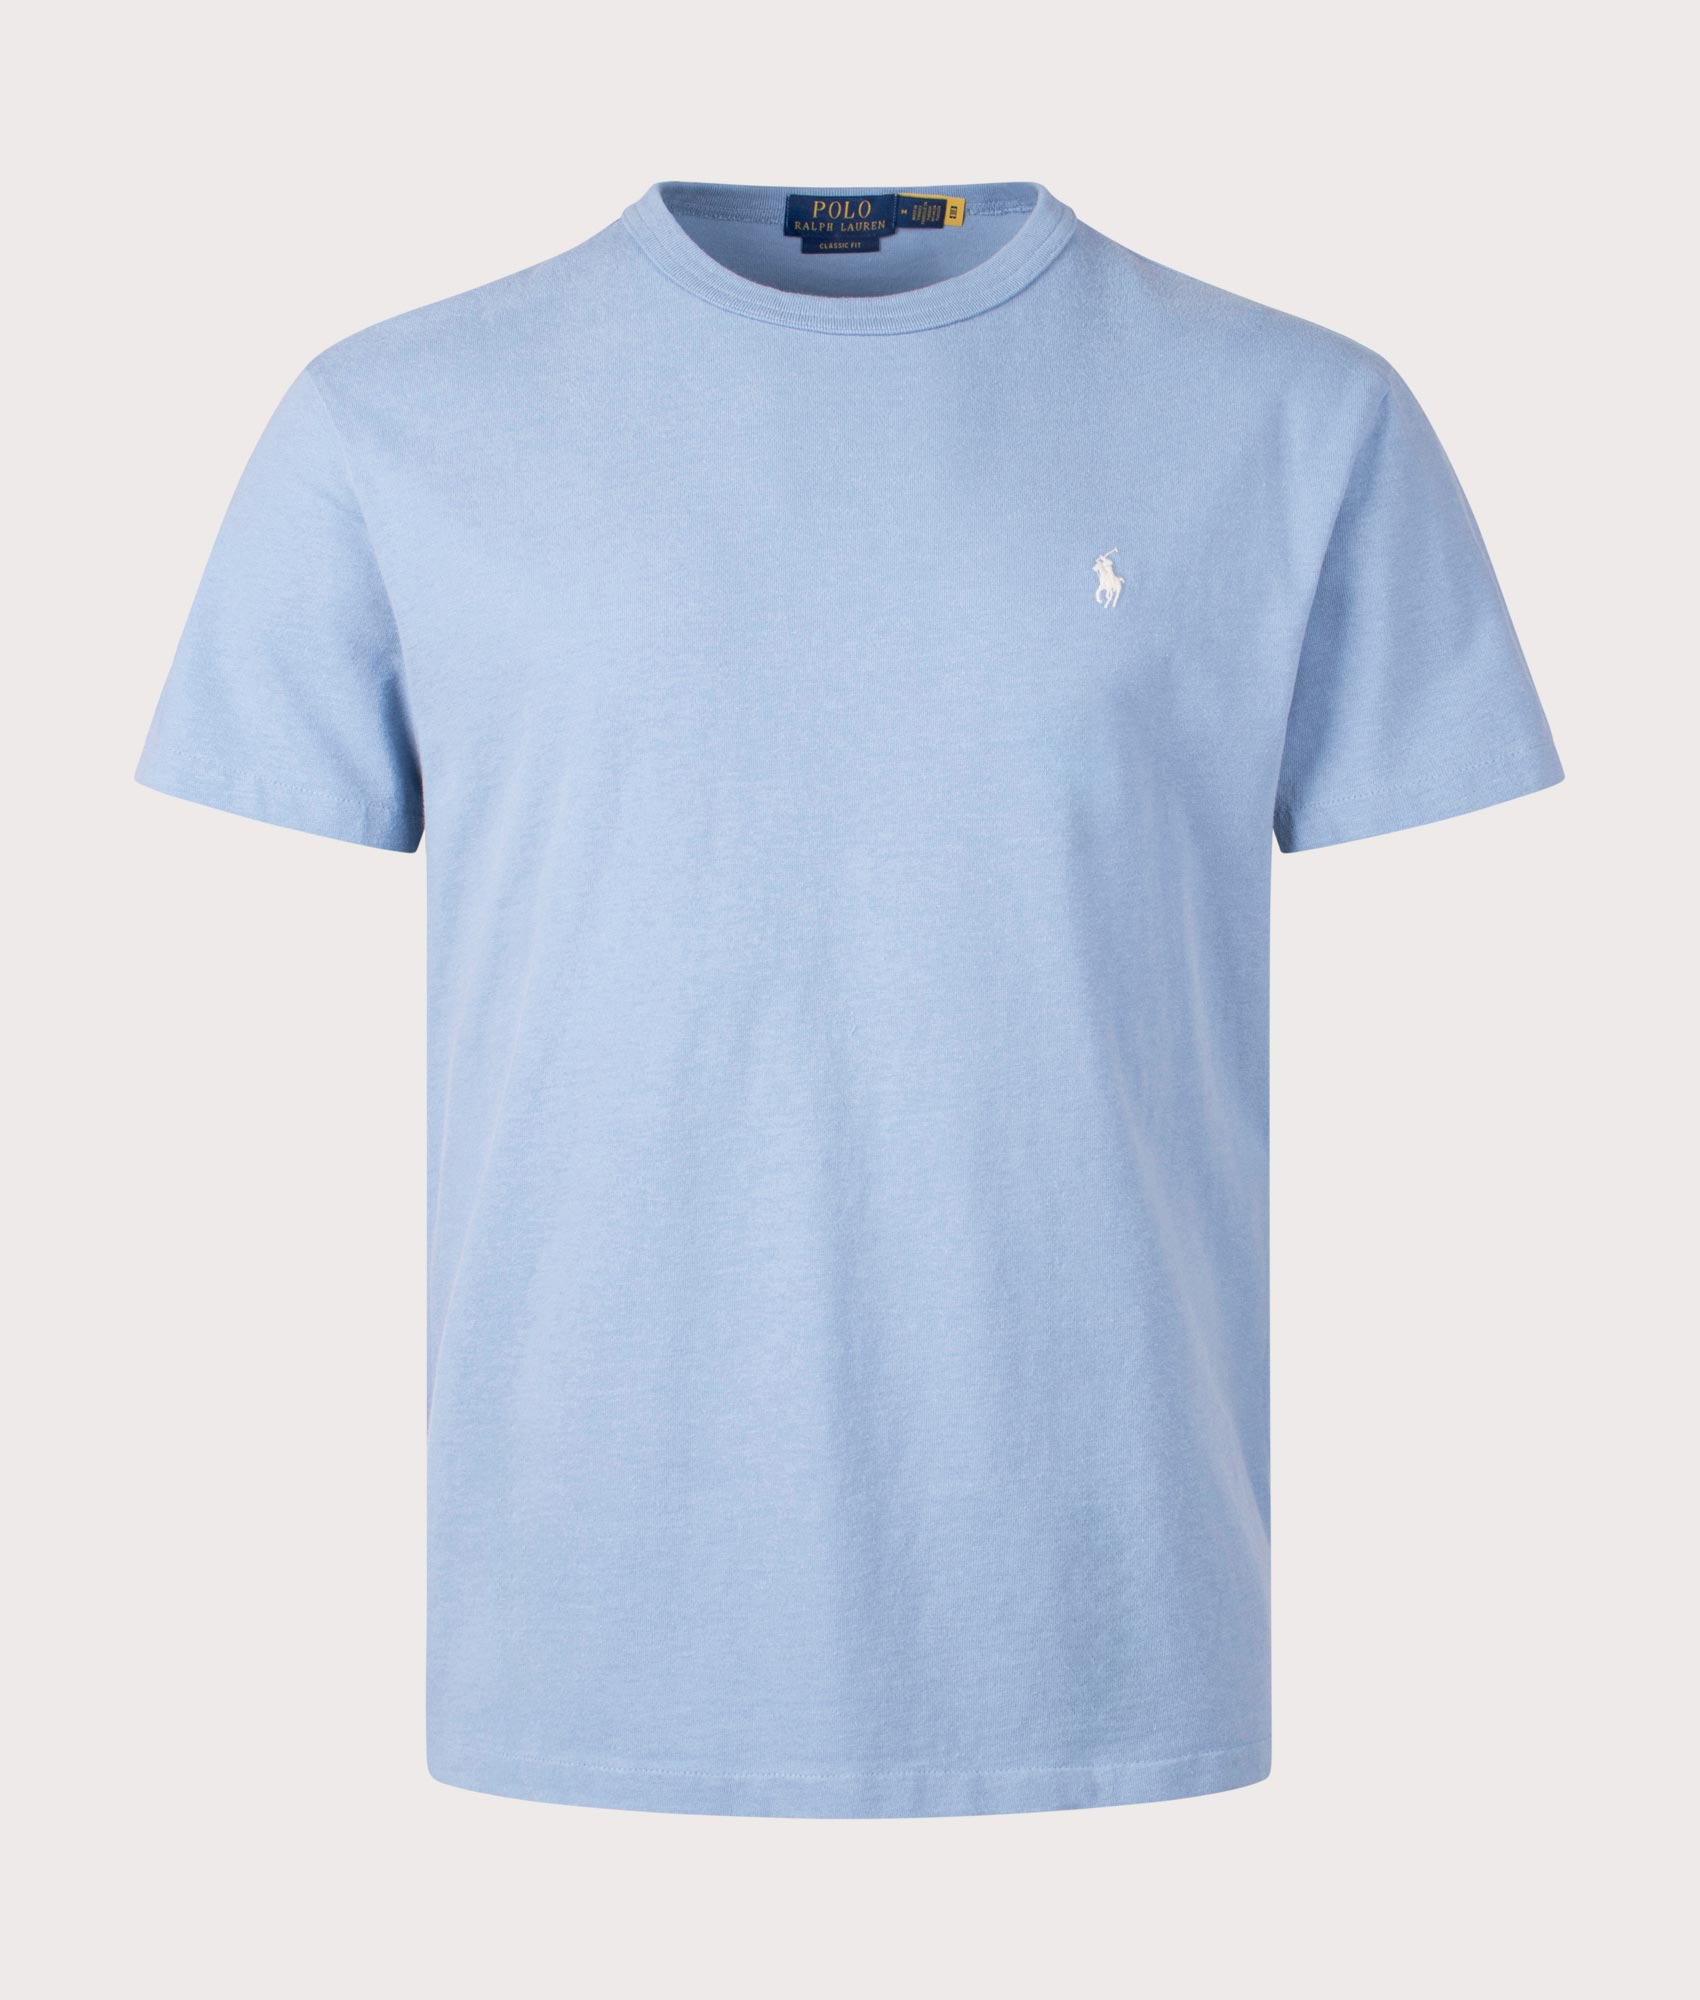 Polo Ralph Lauren Mens Classic Fit Jersey T-Shirt - Colour: 014 Channel Blue - Size: Medium